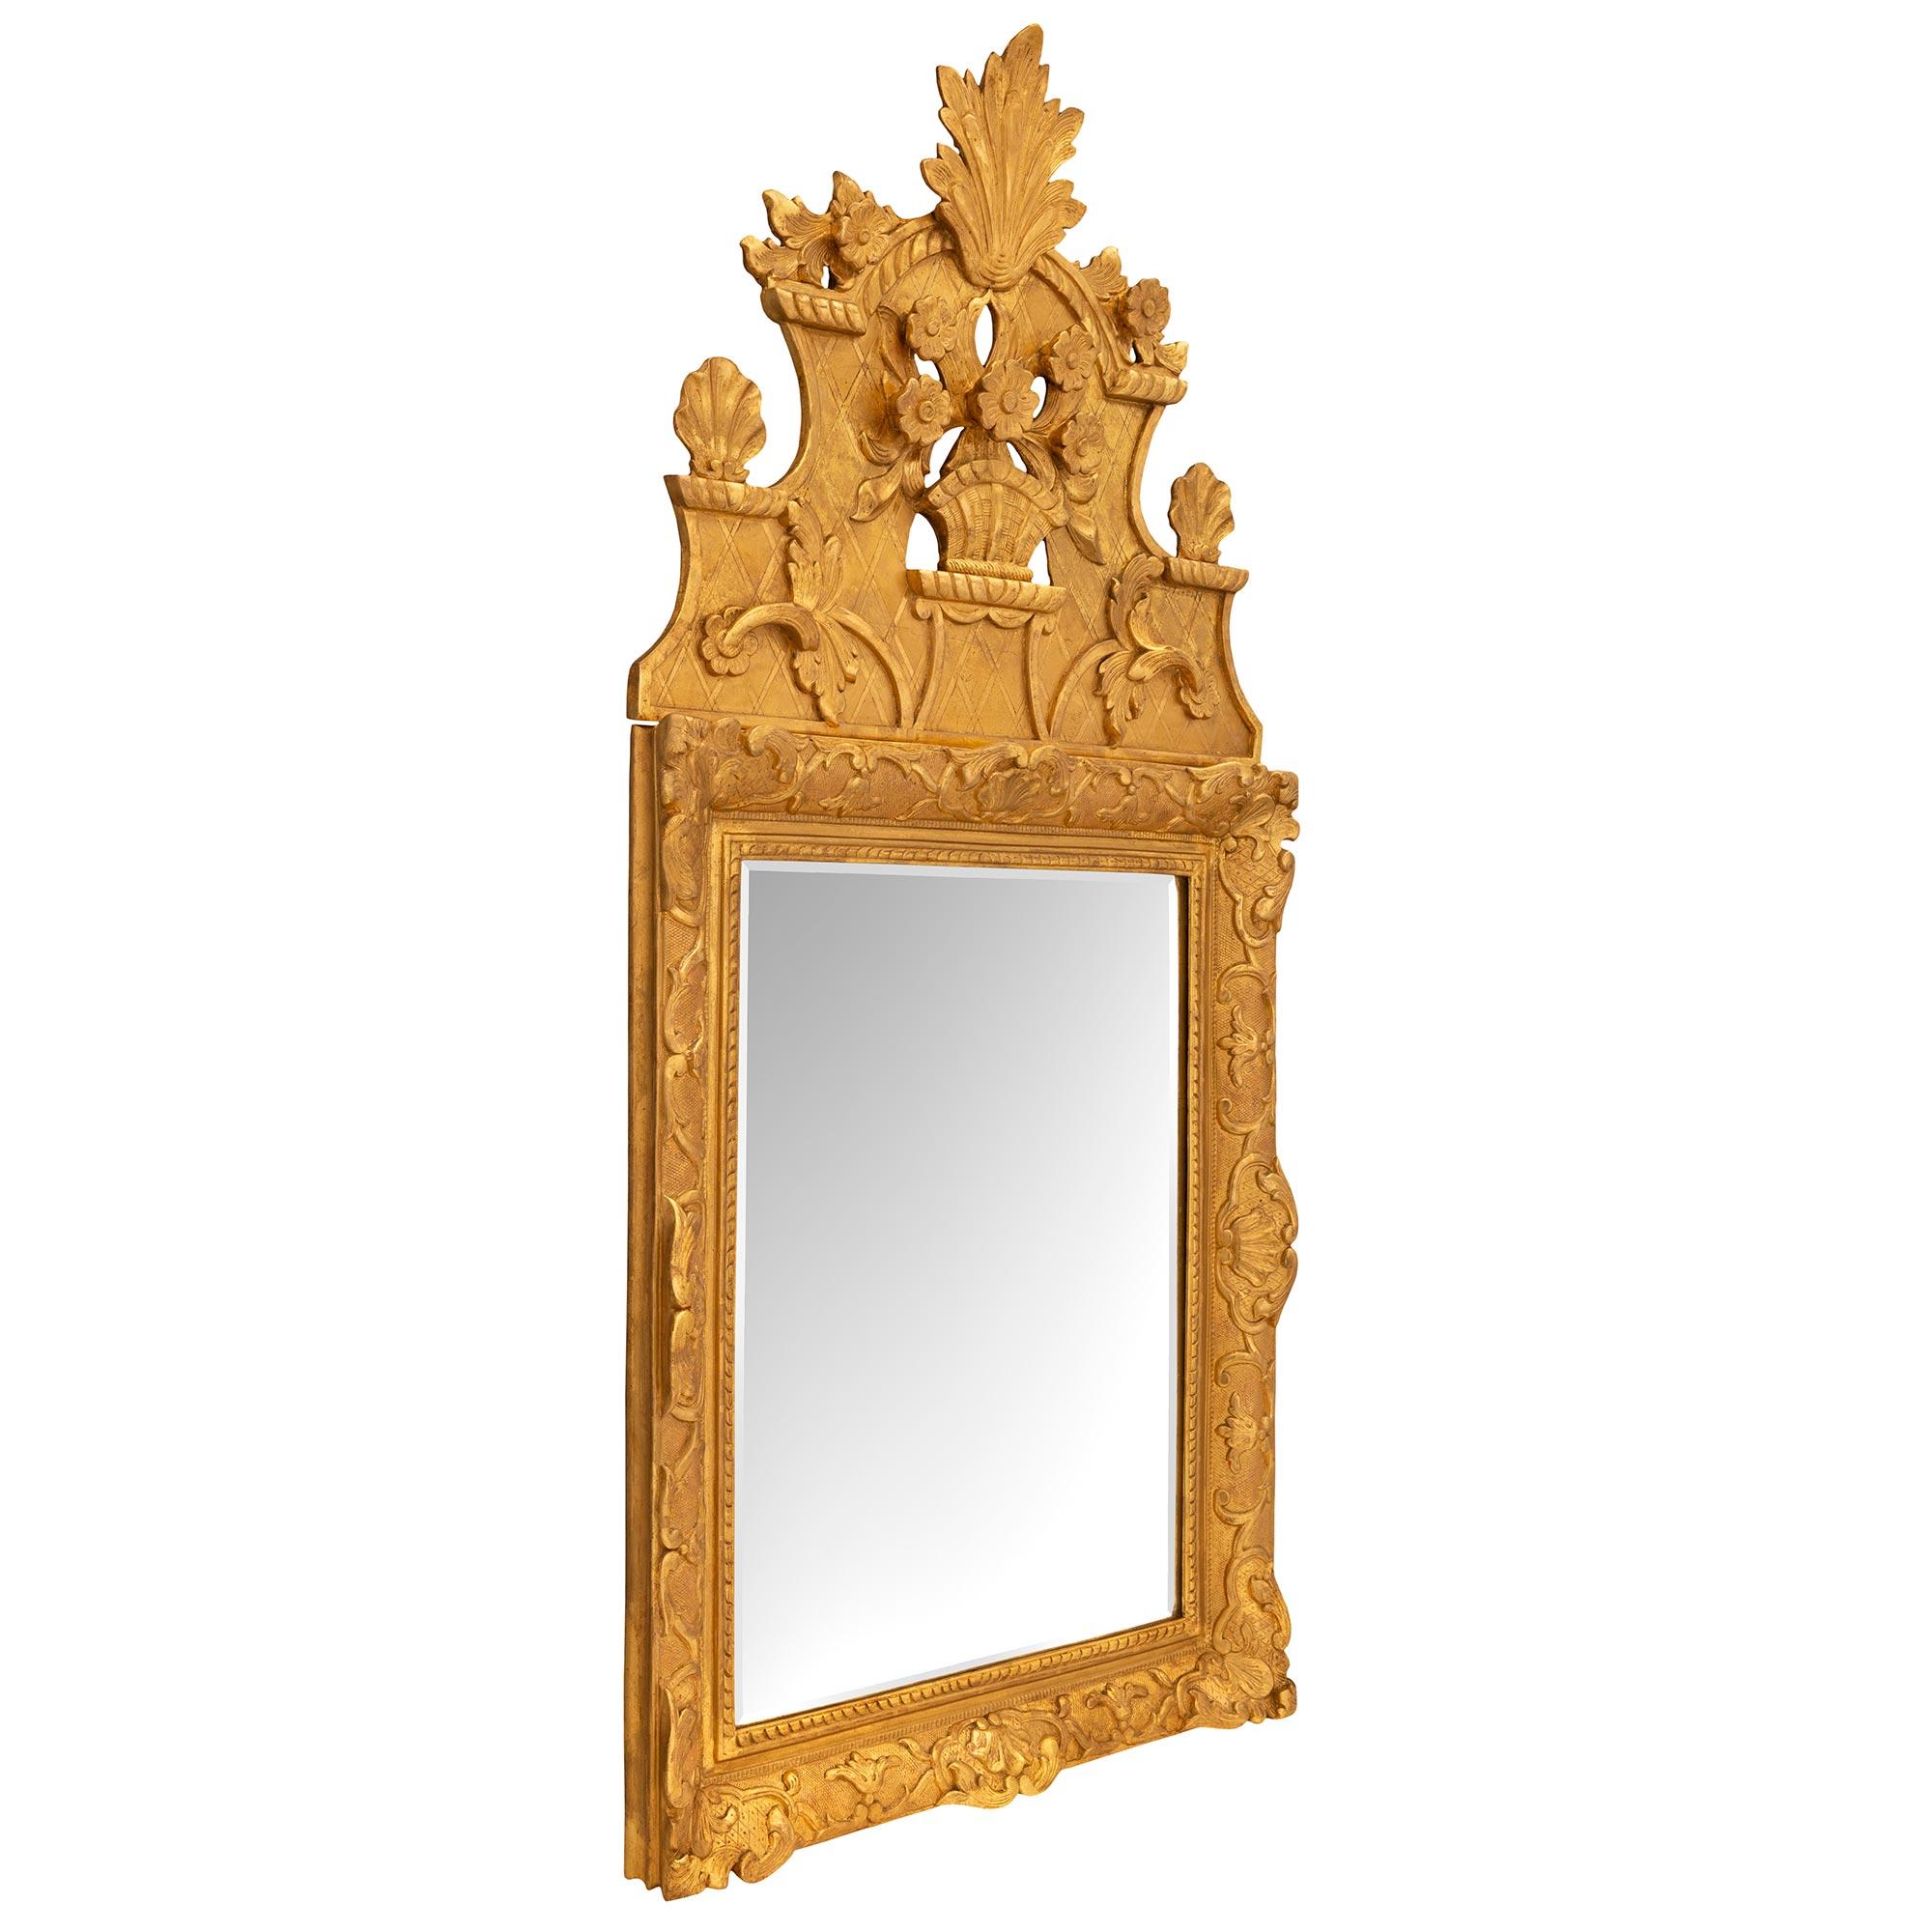 Eine schöne Französisch 18. Jahrhundert Regence Zeitraum Vergoldung Spiegel. Der Spiegel behält seine ursprüngliche abgeschrägte Spiegelplatte, die von einer eleganten gesprenkelten und gedrehten Bandeinfassung umgeben ist. Der Rahmen zeigt